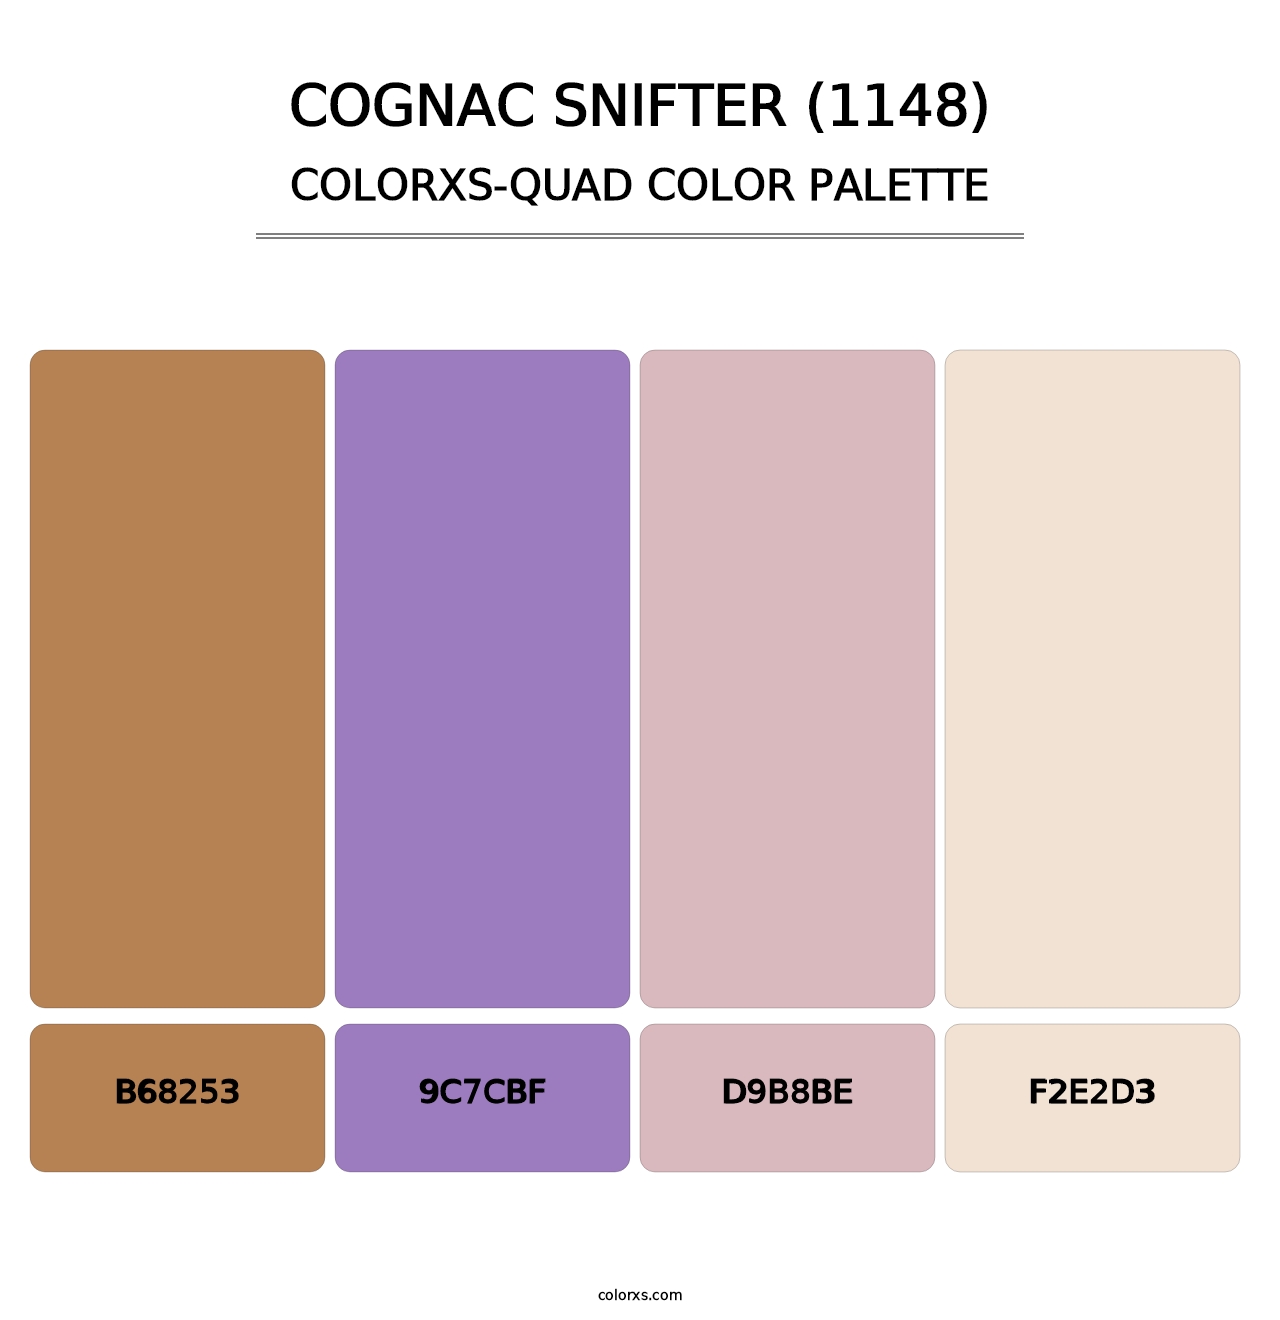 Cognac Snifter (1148) - Colorxs Quad Palette